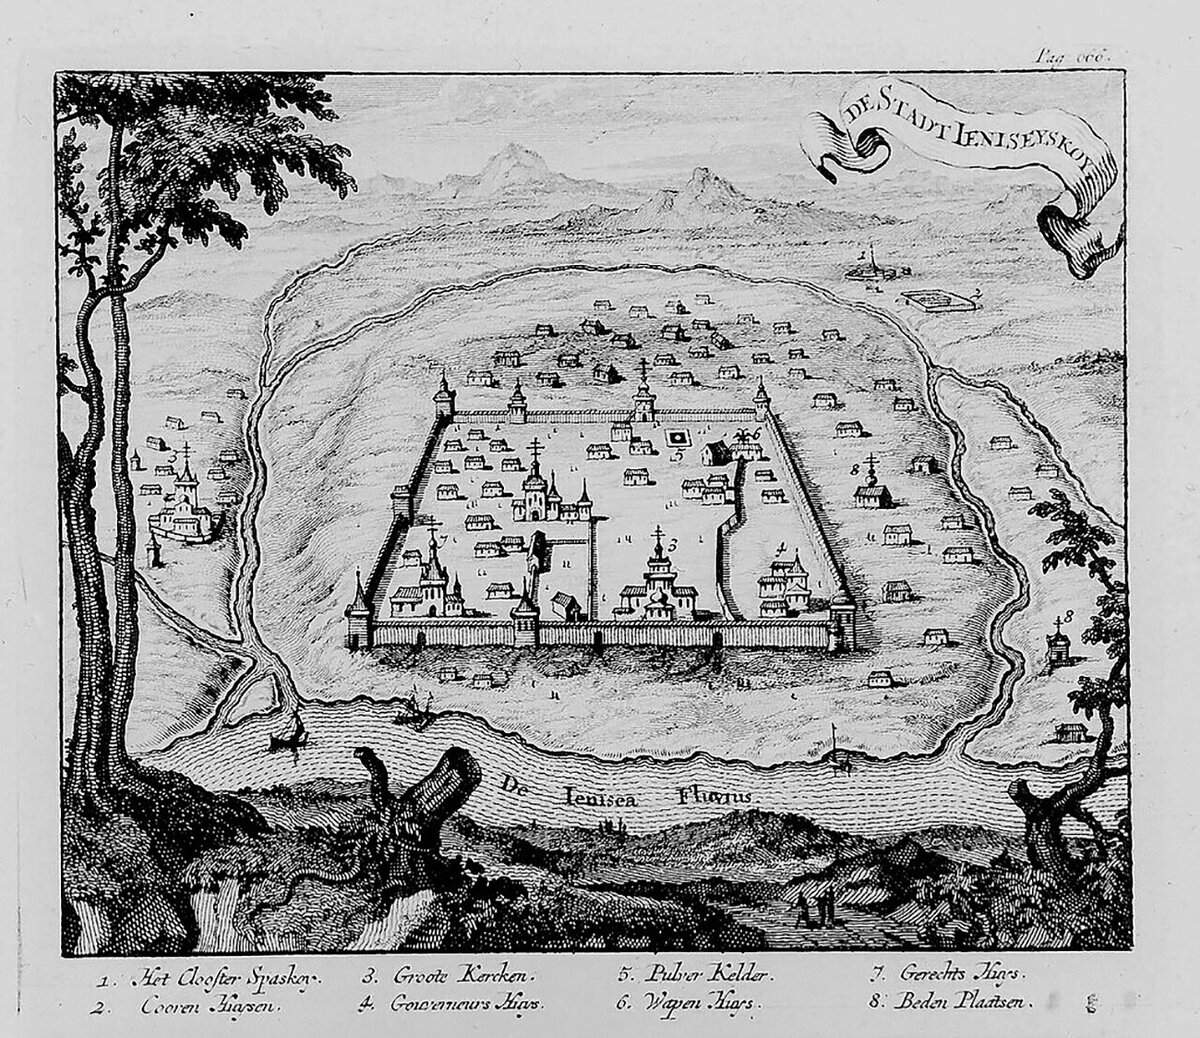 Енисейский острог в конце XVII века
Общественное достояние